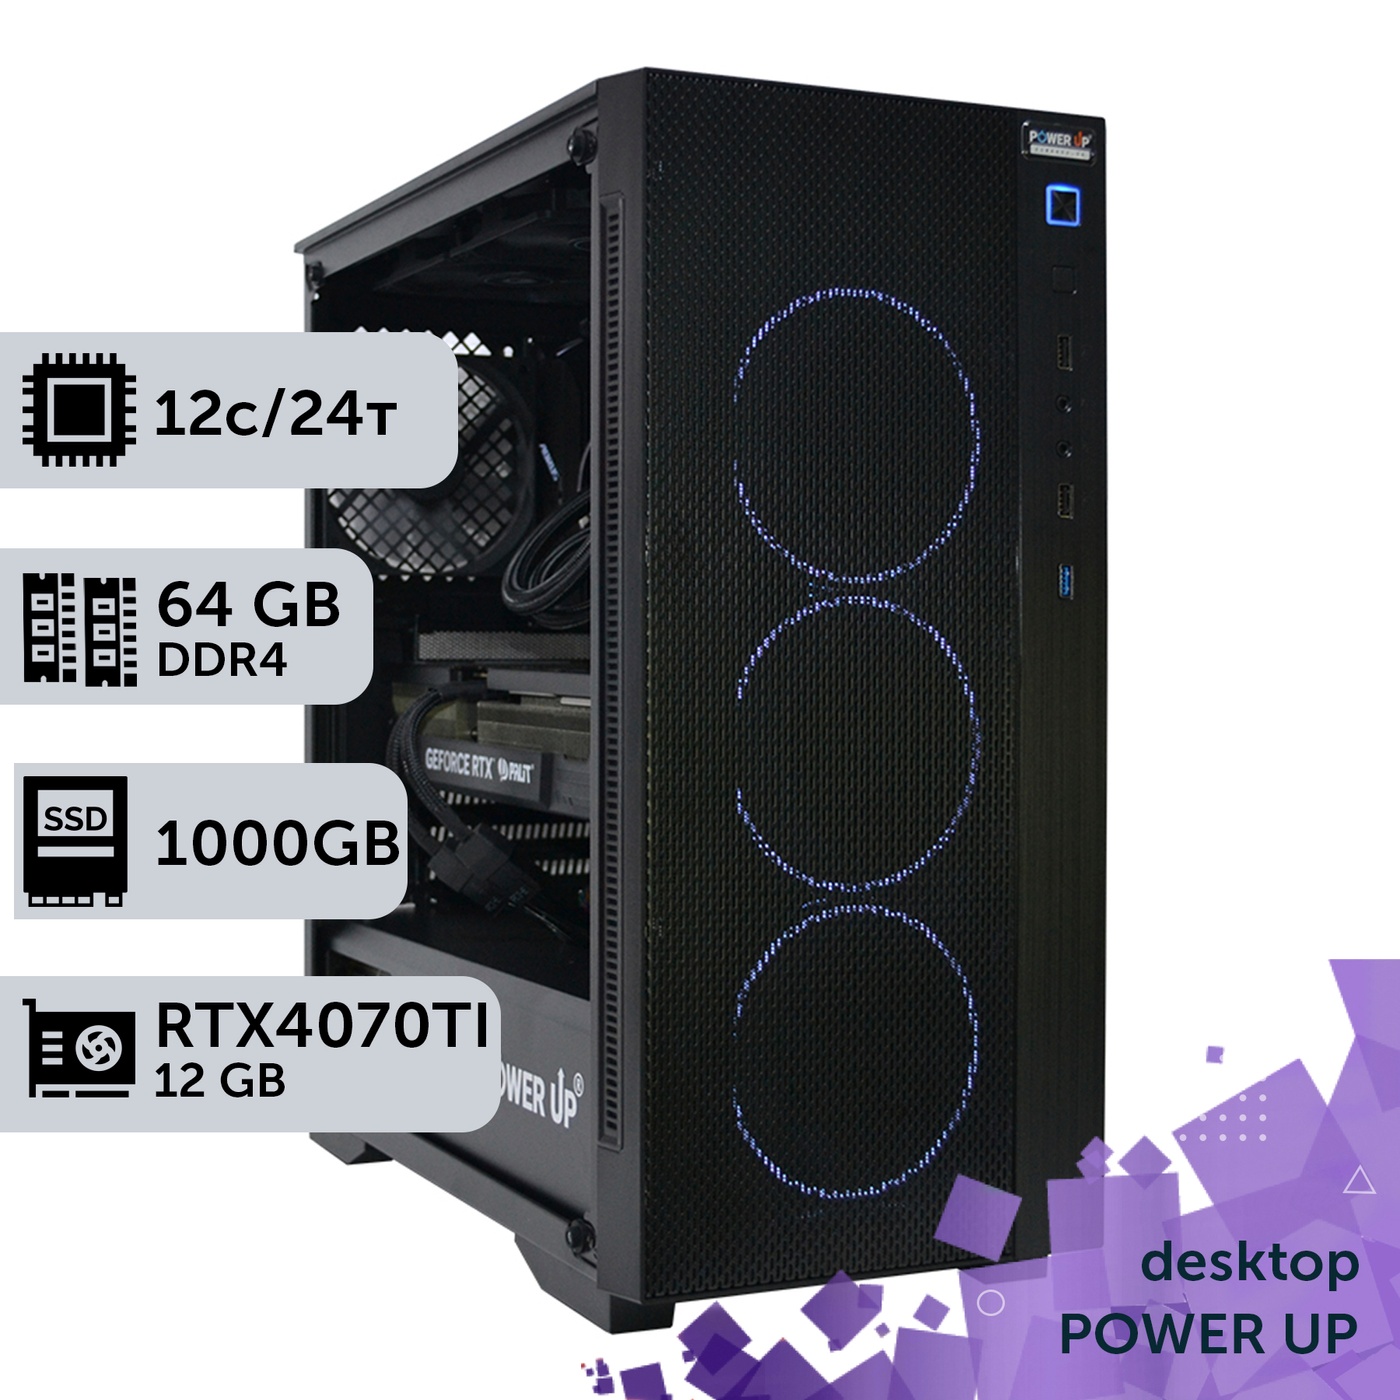 Робоча станція PowerUp Desktop #203 Ryzen 9 5900x/64 GB/HDD 2 TB/SSD 1TB/GeForce RTX 4070Ti 12GB